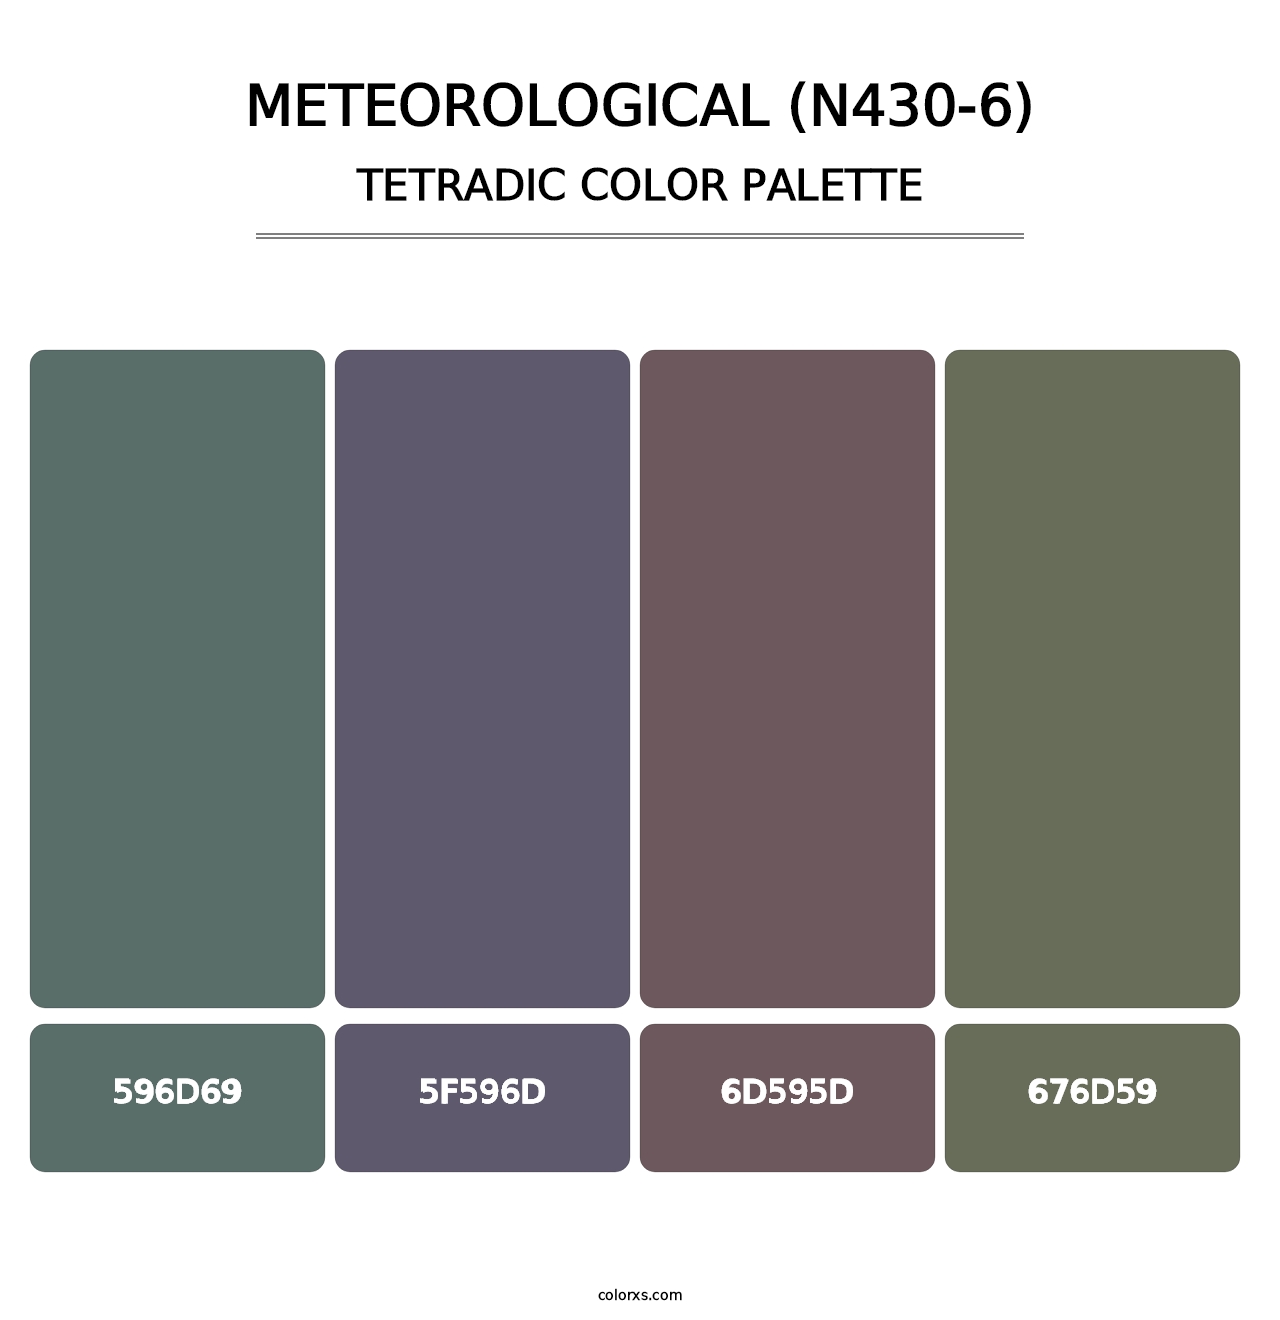 Meteorological (N430-6) - Tetradic Color Palette